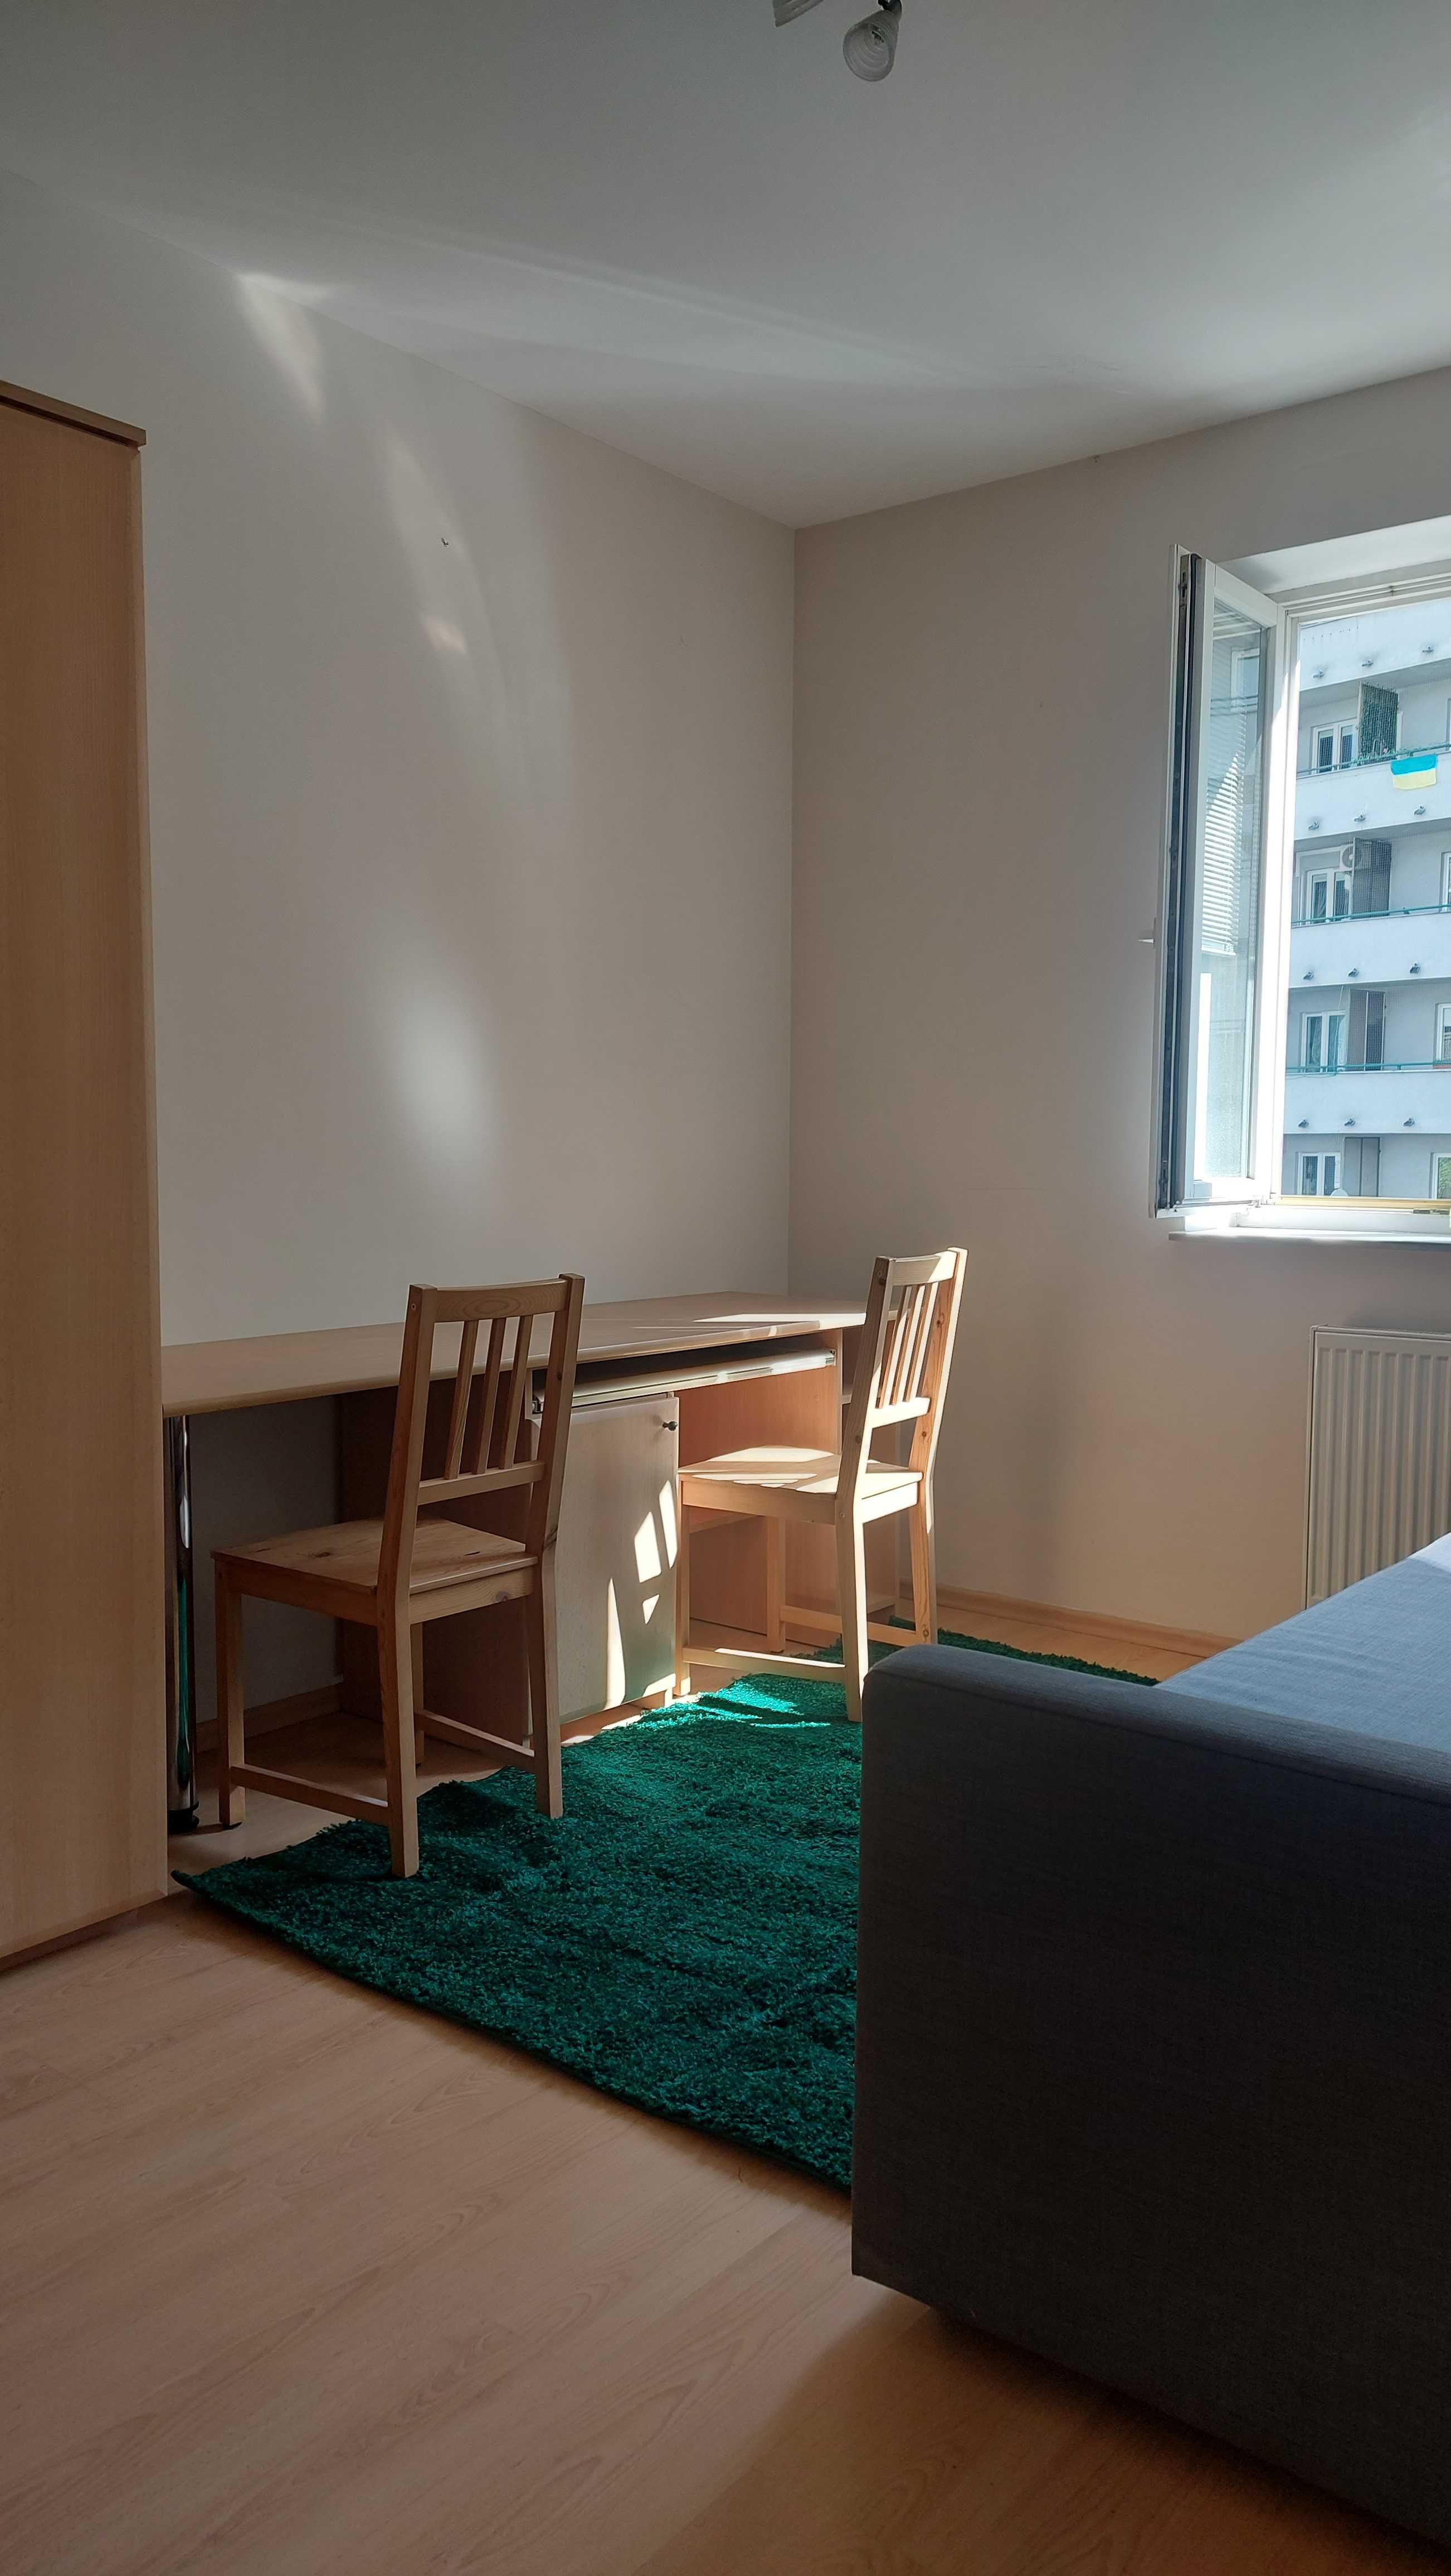 Cudne mieszkanie do wynajęcia w Krakowie, w doskonałej lokalizacji